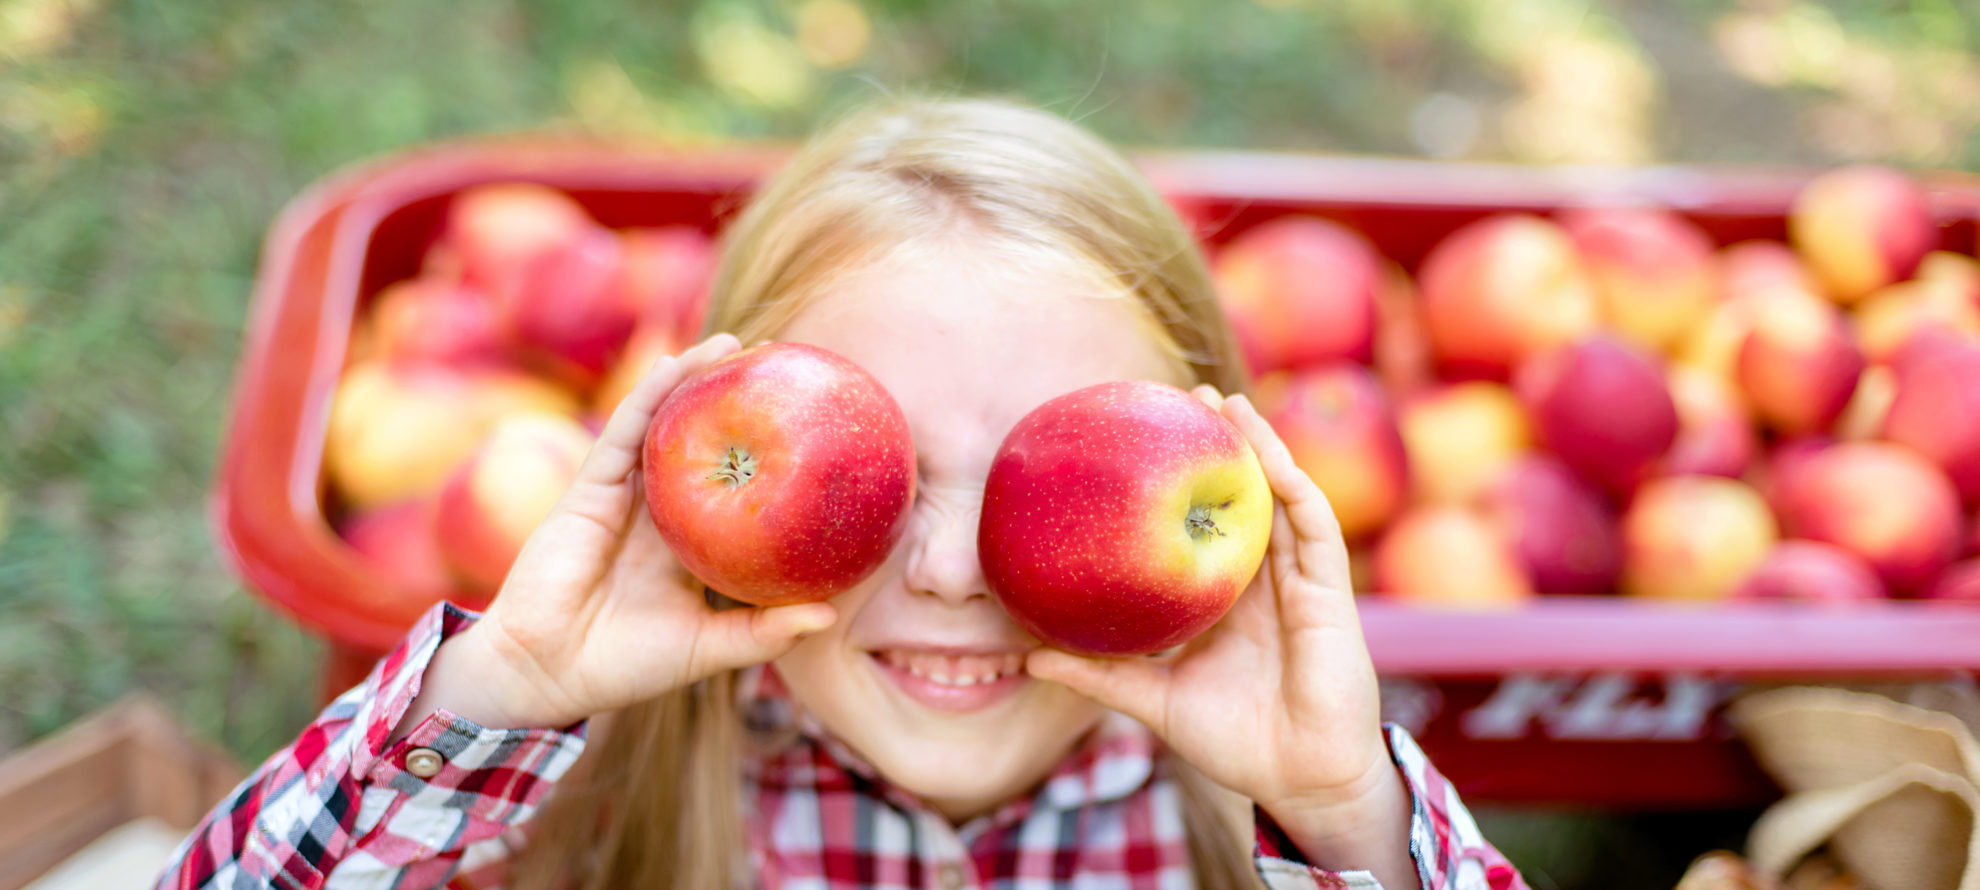 Tarp rudens dovanojamų gėrybių metai iš metų populiarumo viršūnės neužleidžia obuoliai. Nors šie Lietuvos soduose gausiai auginami vaisiai lietuviams yra nuo seno gerai pažįstami ir, rodos, visų mėgstami, sveikatos priežiūros specialistai rekomenduoja į obuolius atsigręžti darsyk bei atrasti jų nepamatuojamą naudą organizmui.